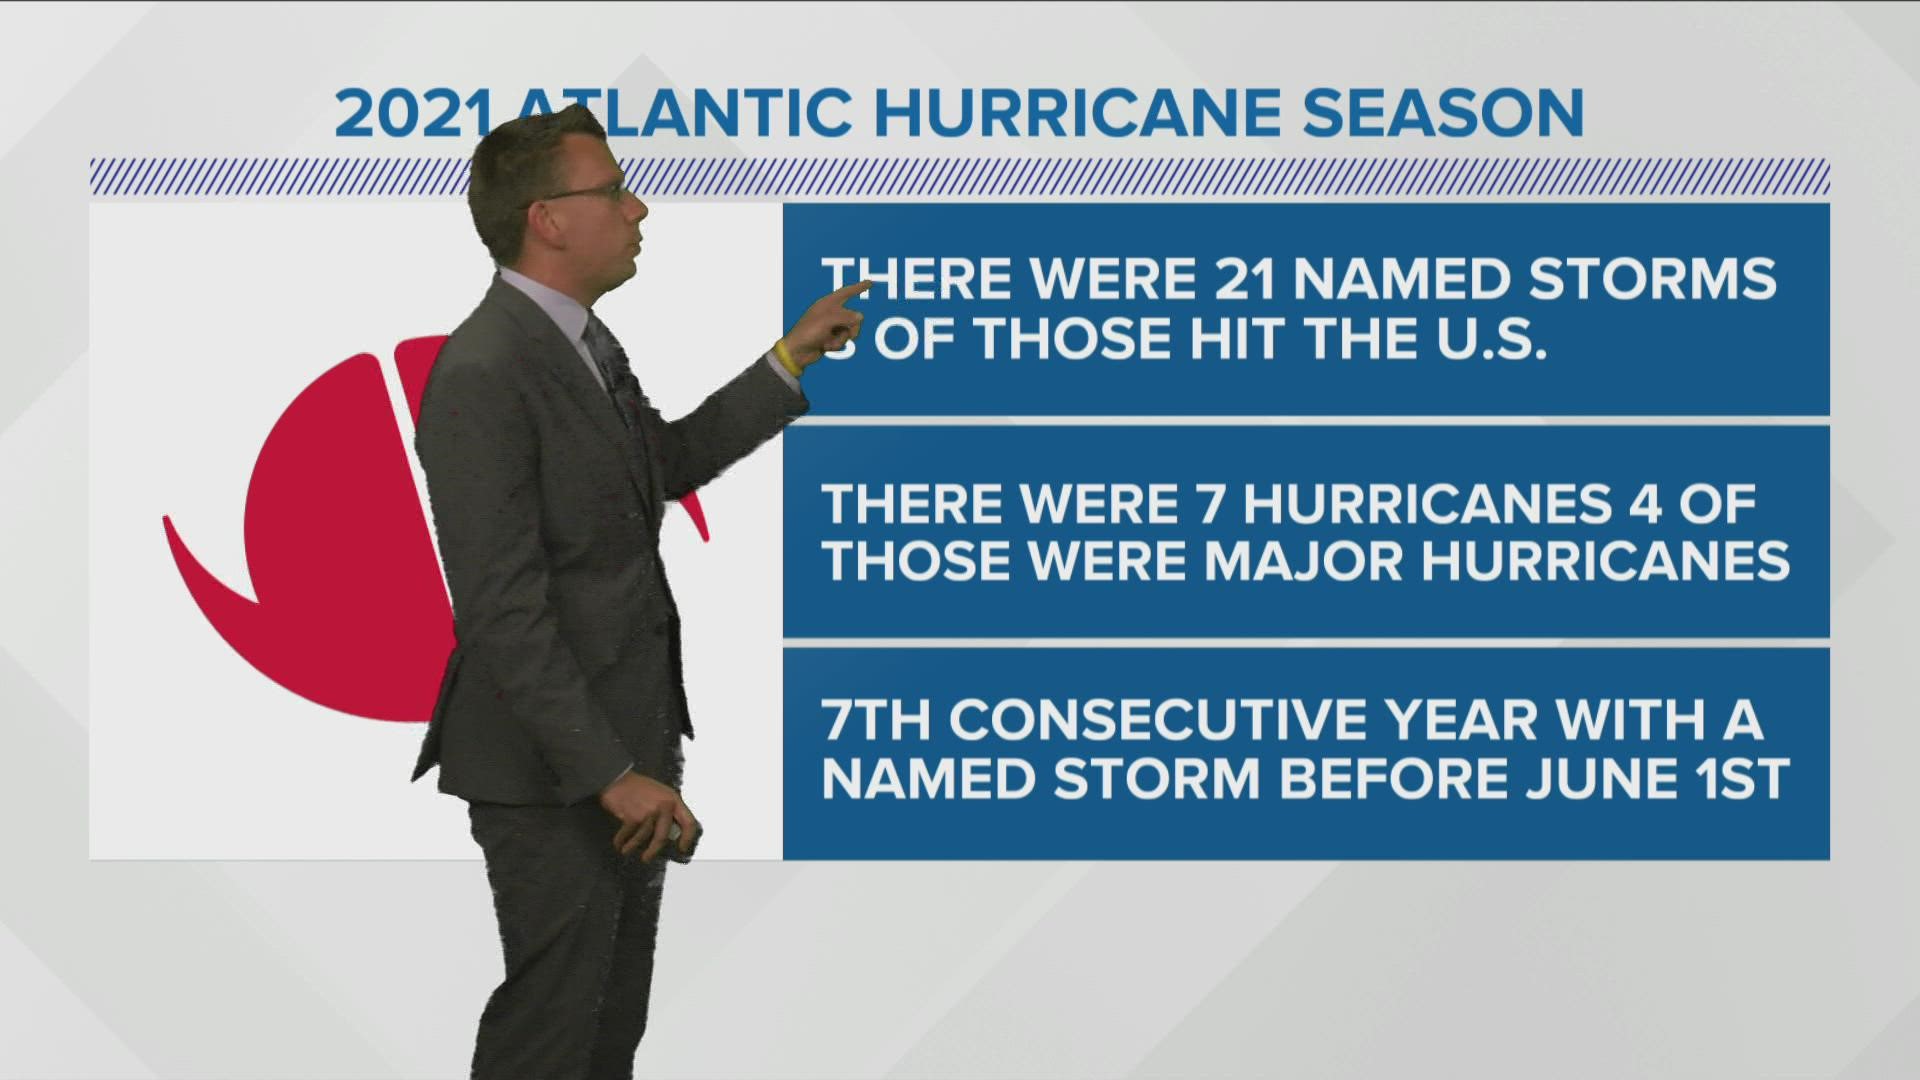 The 2021 Atlantic Hurricane Season is behind us.